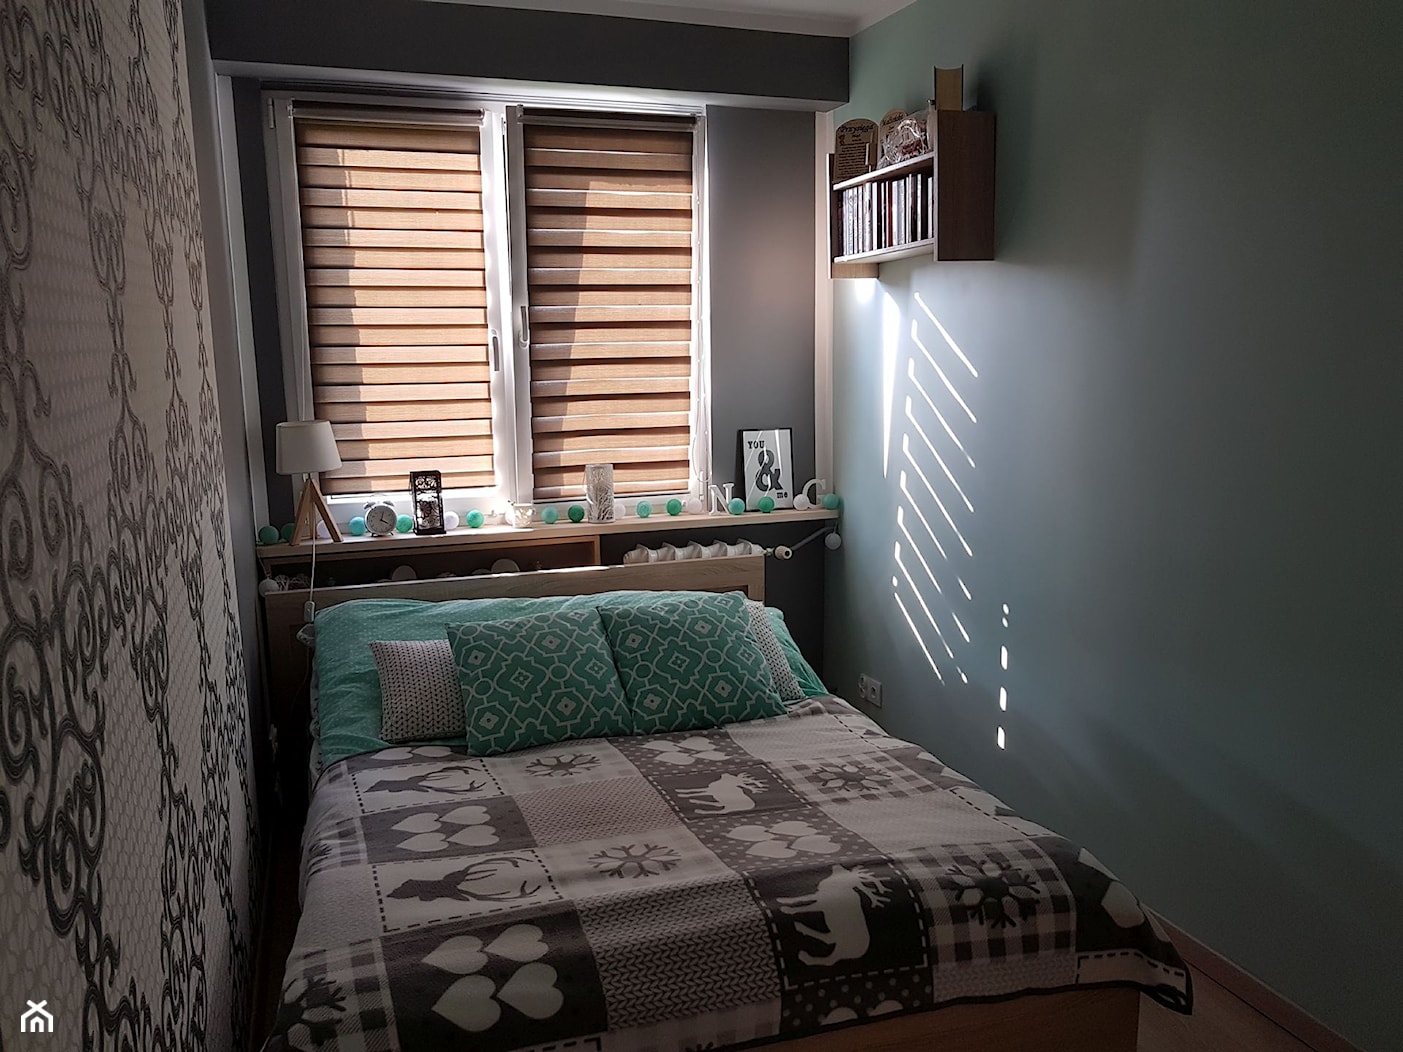 Mieszkanie w wielkiej płycie - spełnione marzenie - Mała szara sypialnia, styl skandynawski - zdjęcie od Natalia Greń 2 - Homebook